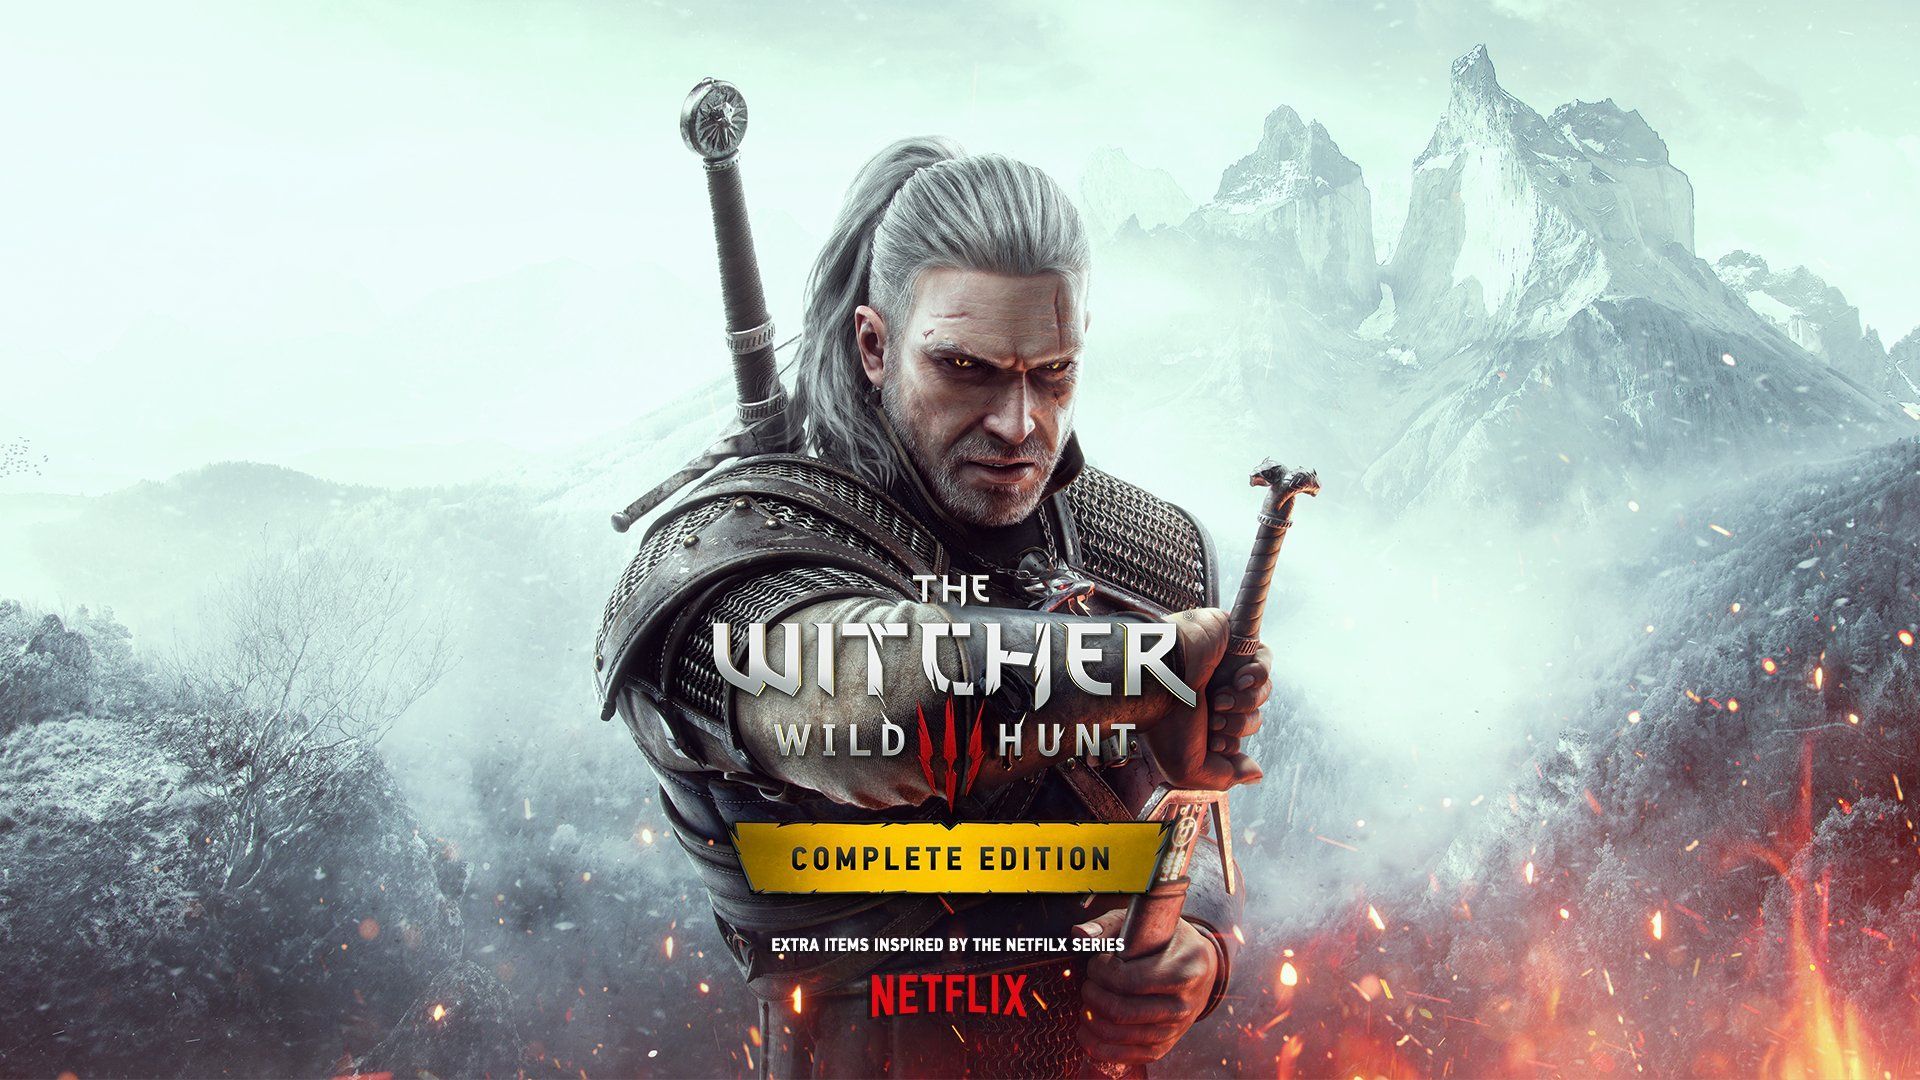 The Witcher 3: Wild Hunt Complete Edition aura droit à des DLC gratuits inspirés par la série Netflix